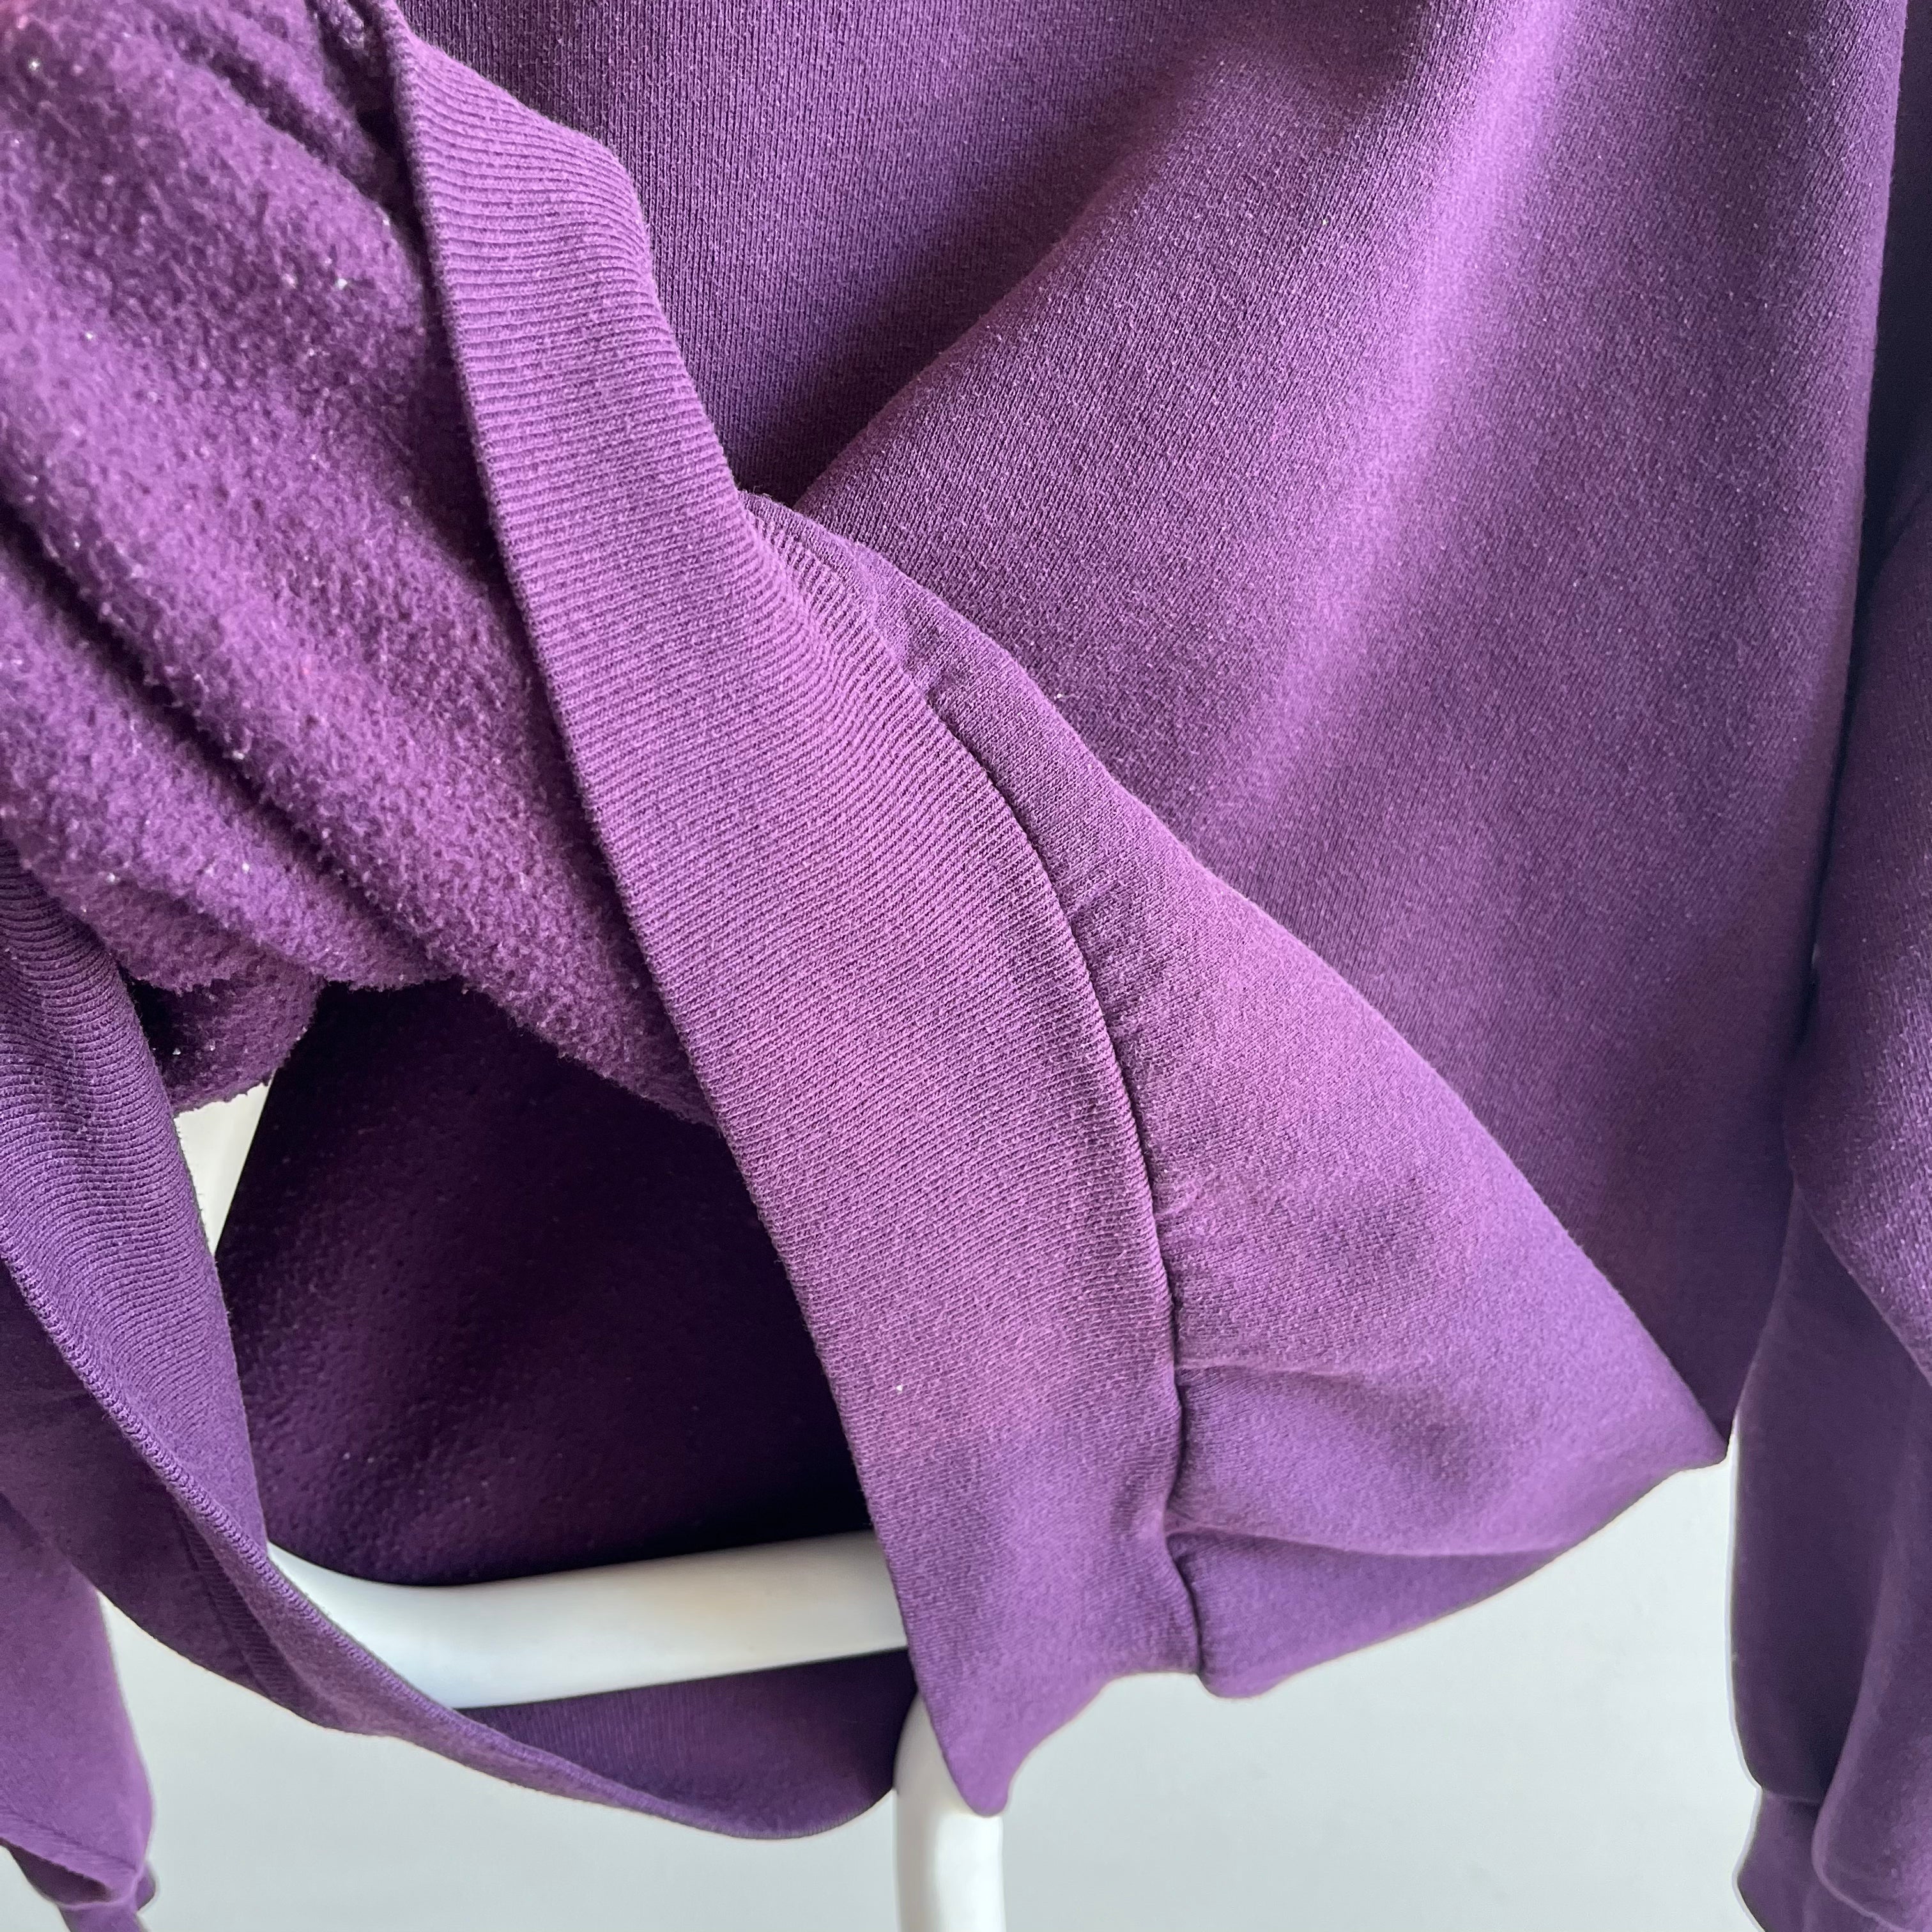 1980s Blank Purple Sweatshirt by Jerzees